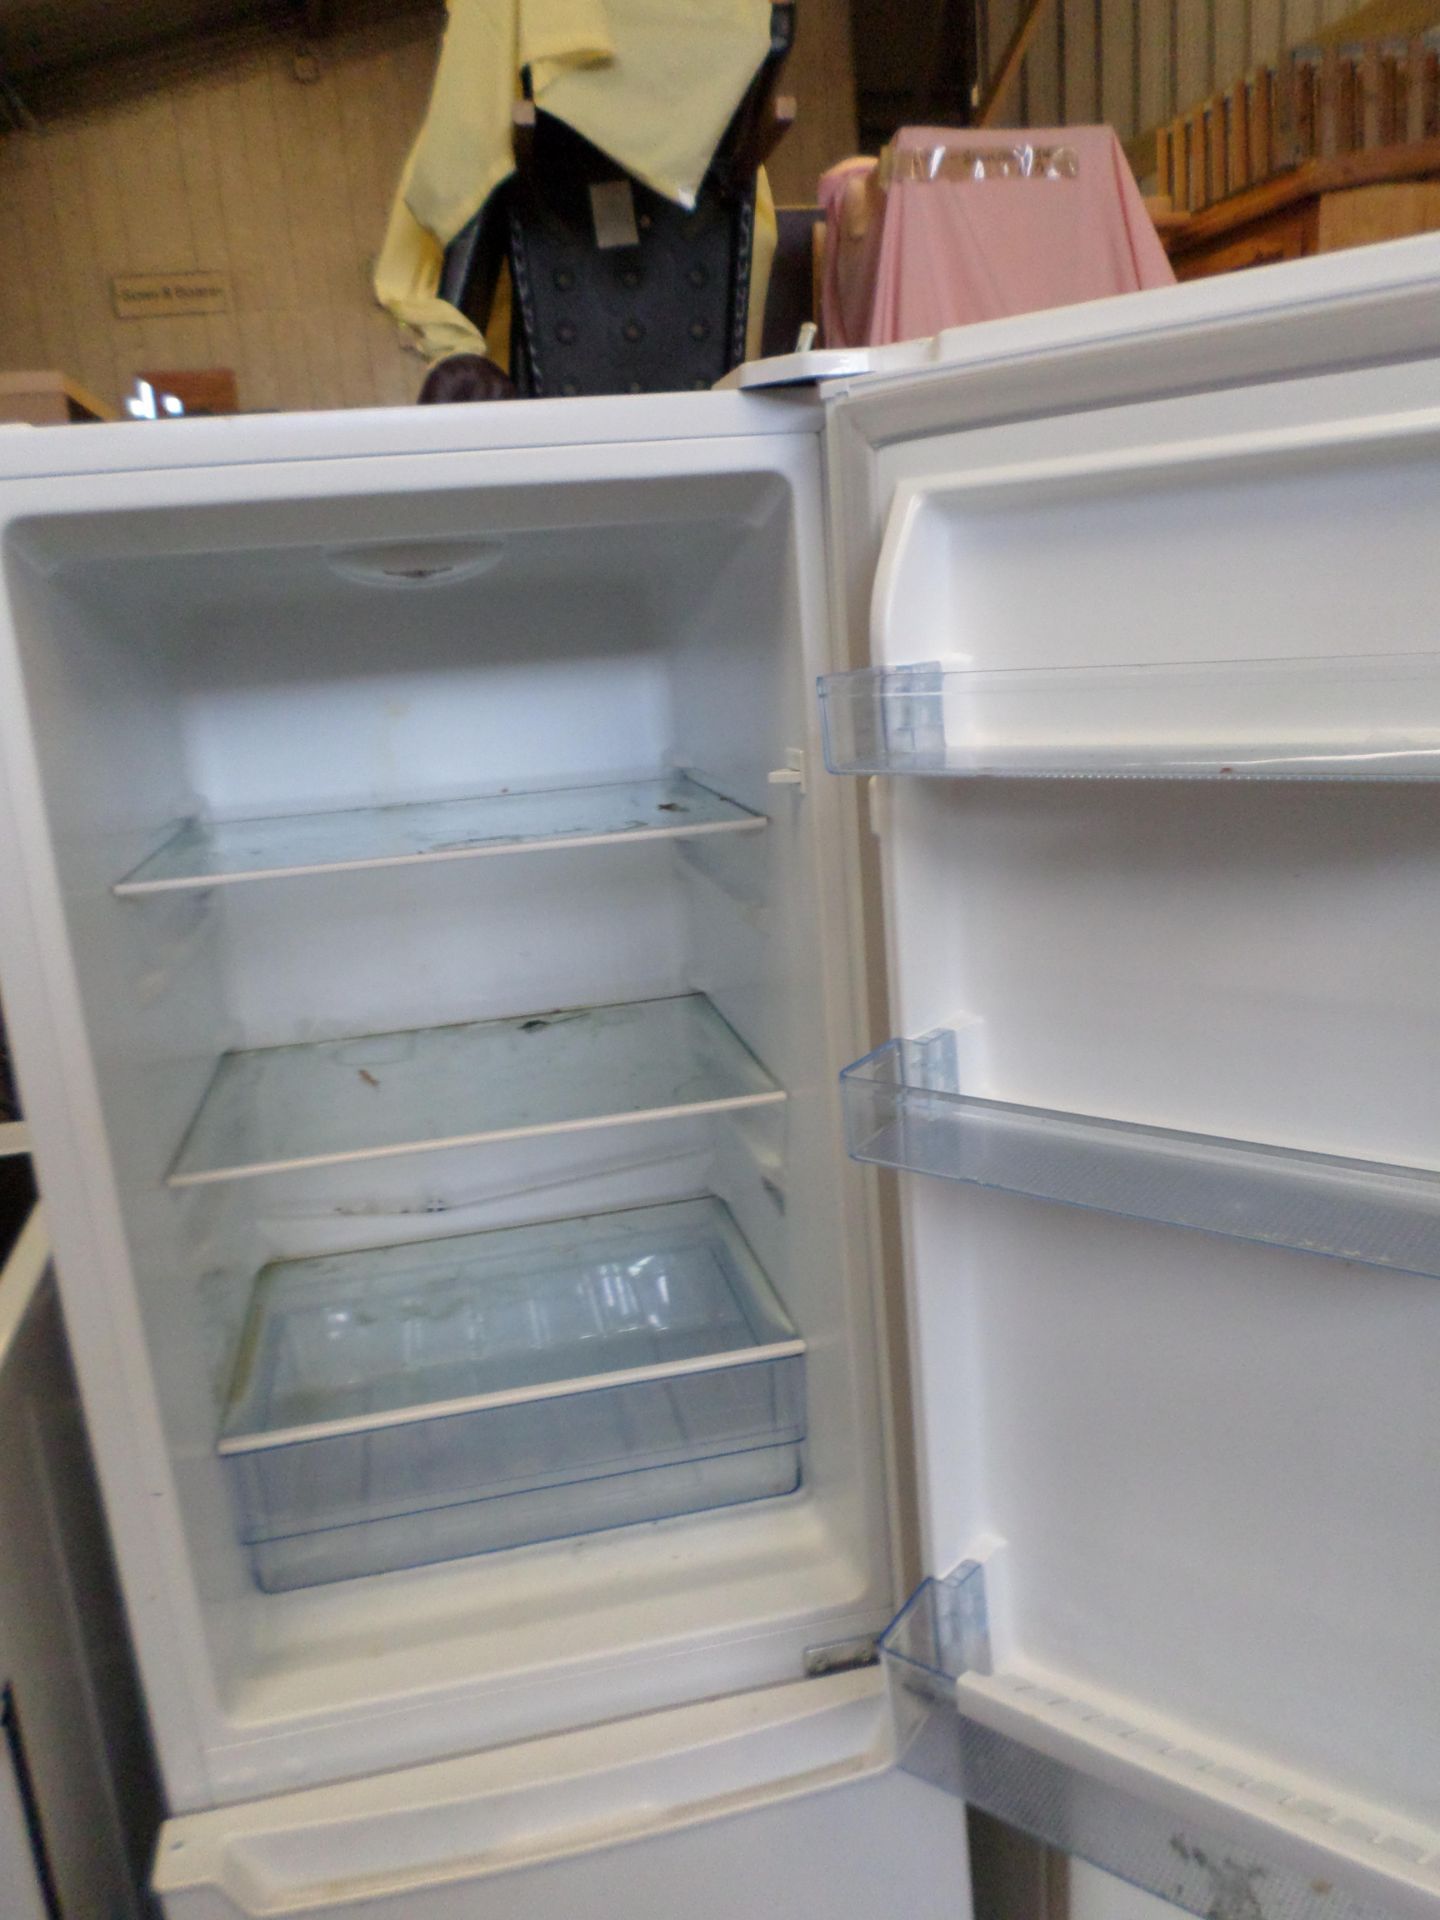 Fridgemaster fridge freezer - Image 3 of 3